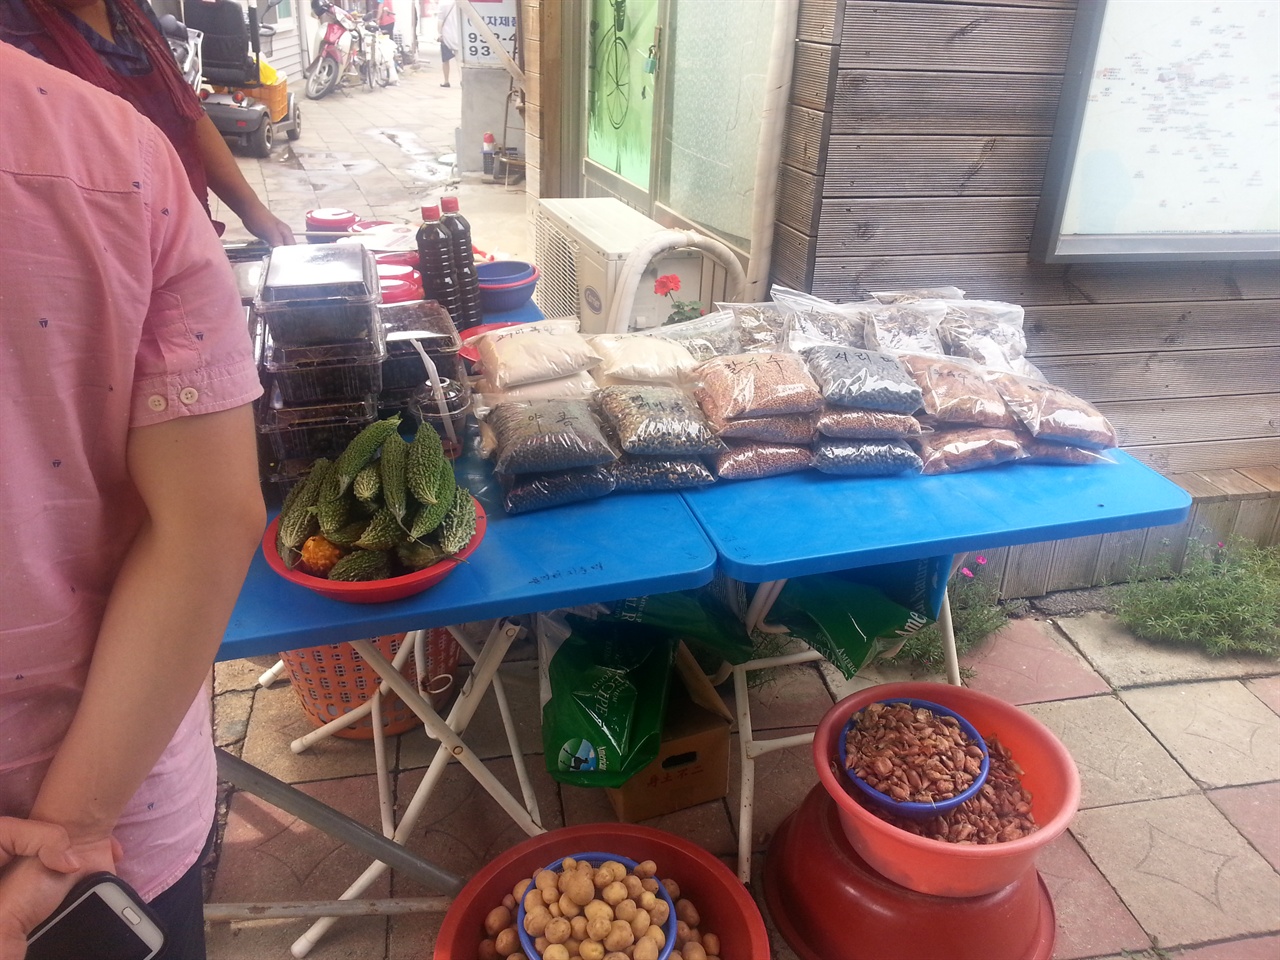 대룡시장에서는 지역주민들이 생산한 농산물을 조금 가져와 관광객을 상대로 직접 판매하기도 합니다.